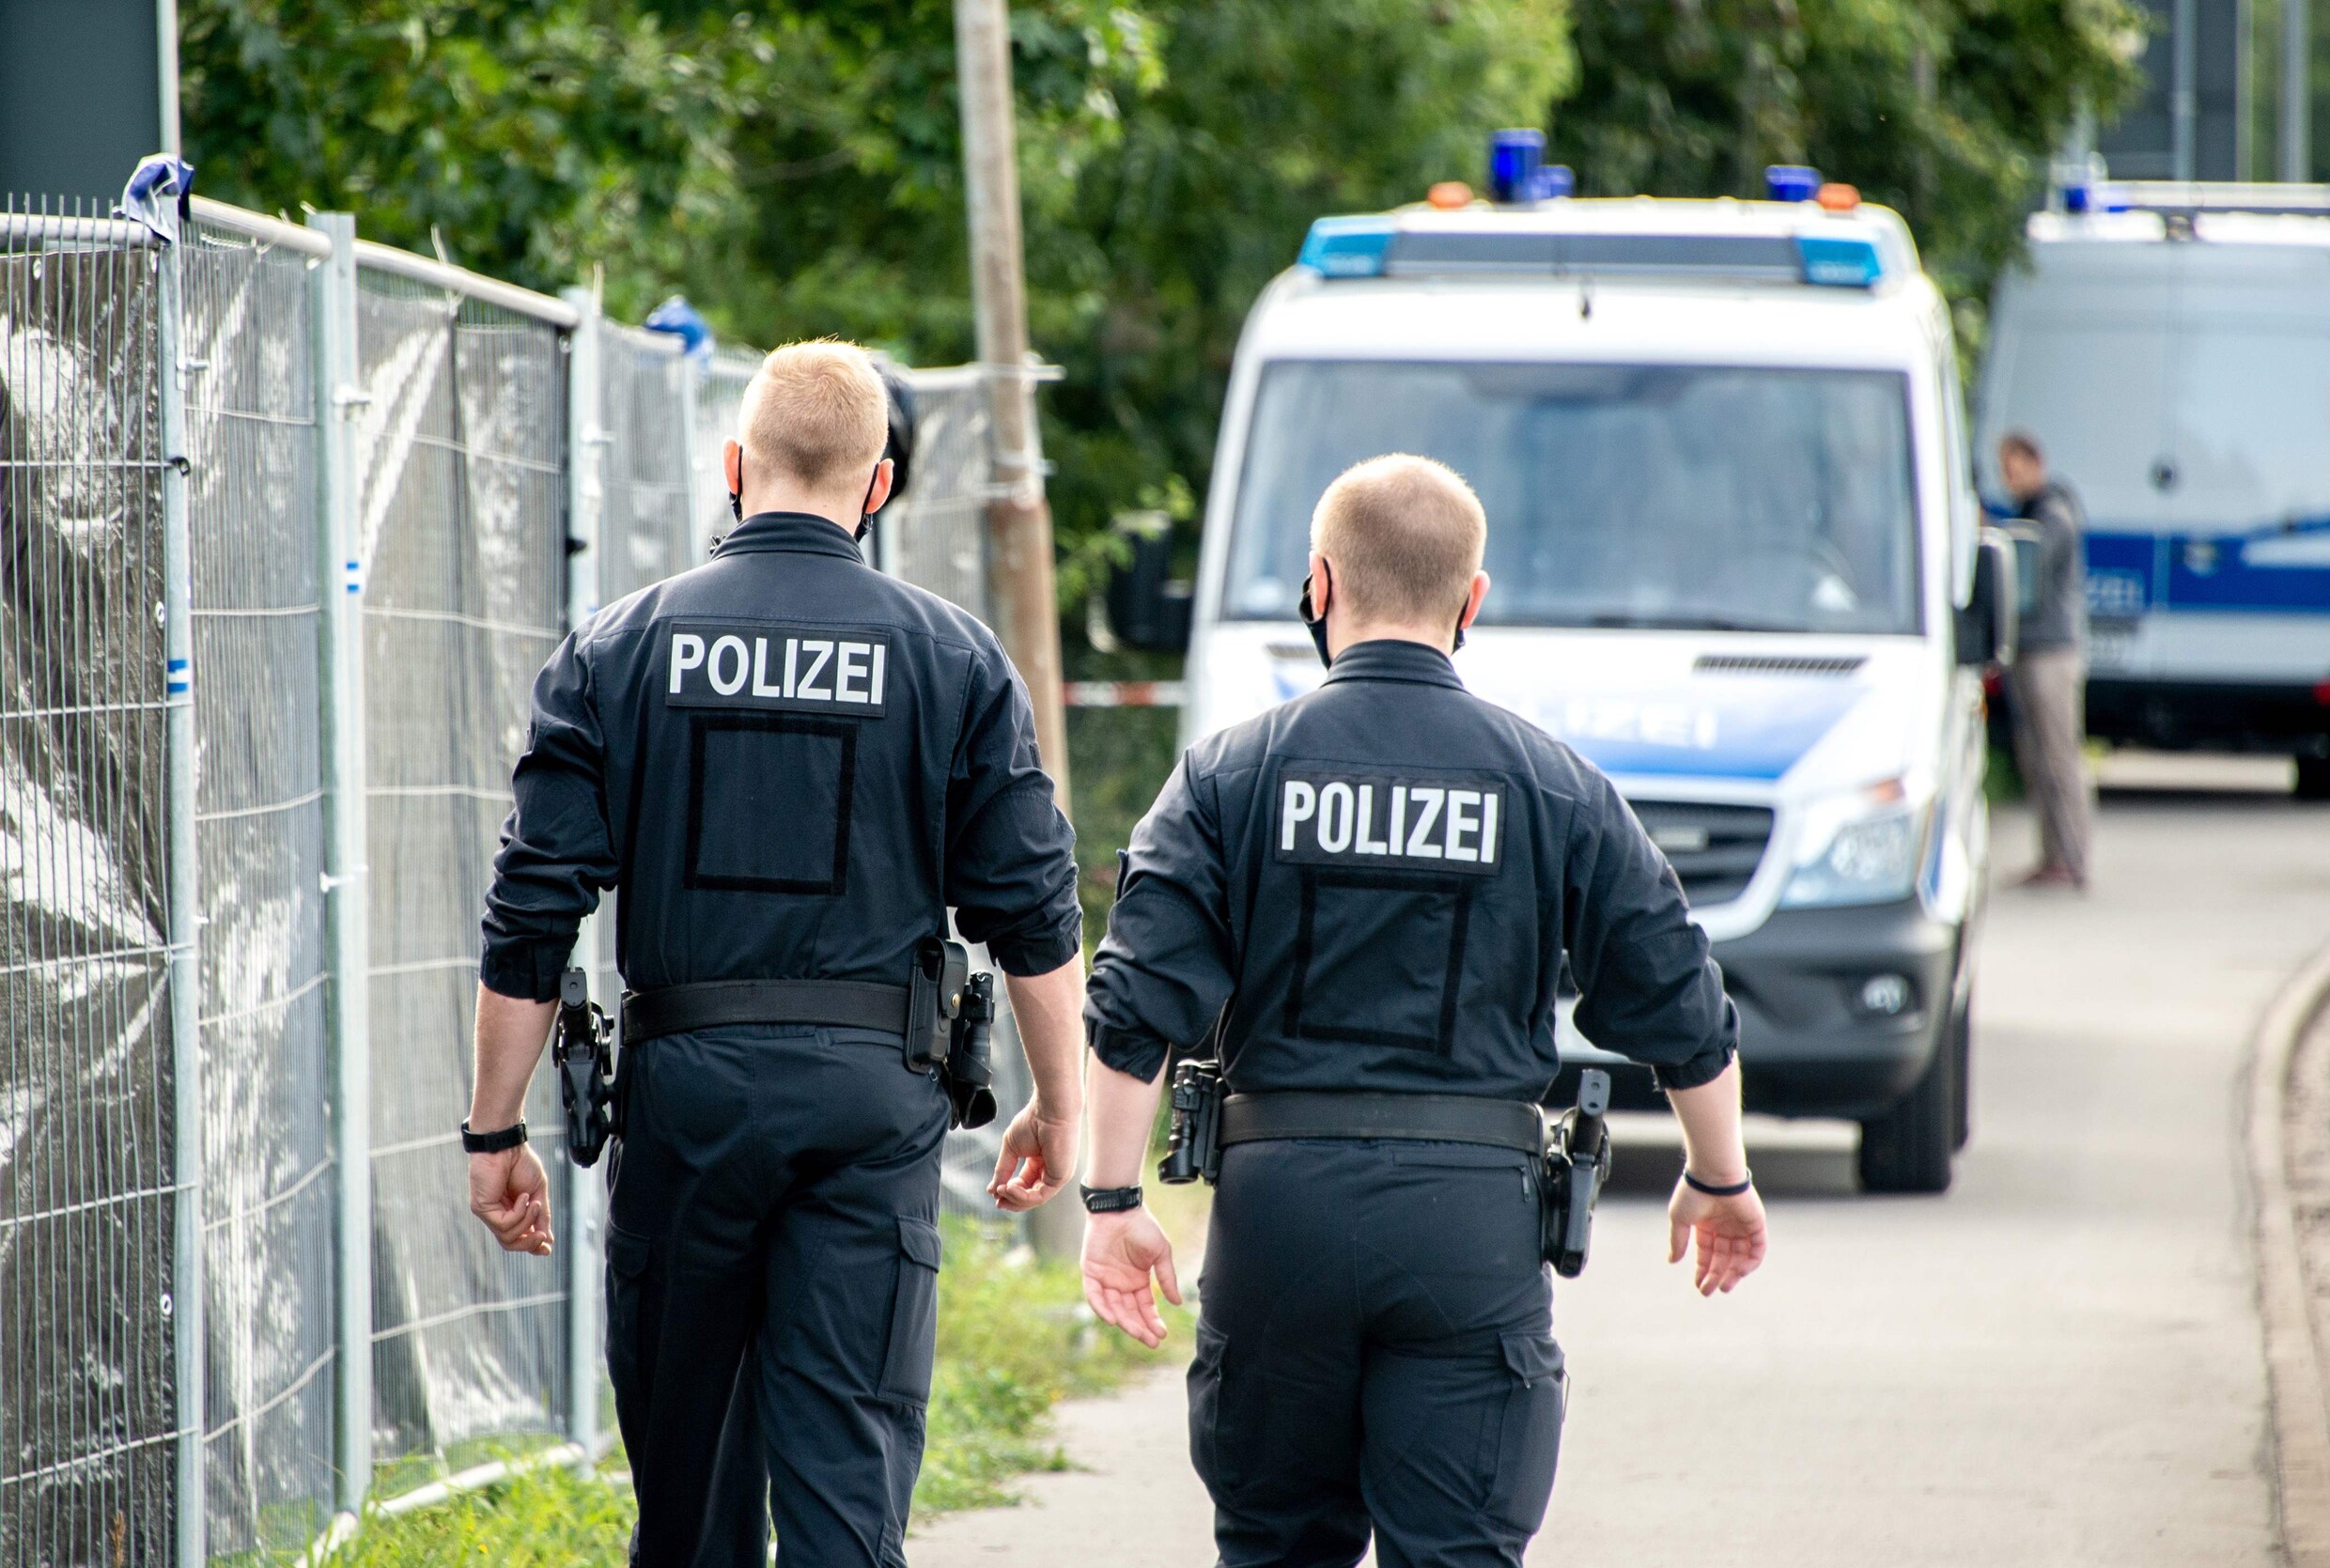 Verdwijning ‘Maddie’: Duitse politie zoekt vandaag verder naar sporen in tuin in Hannover